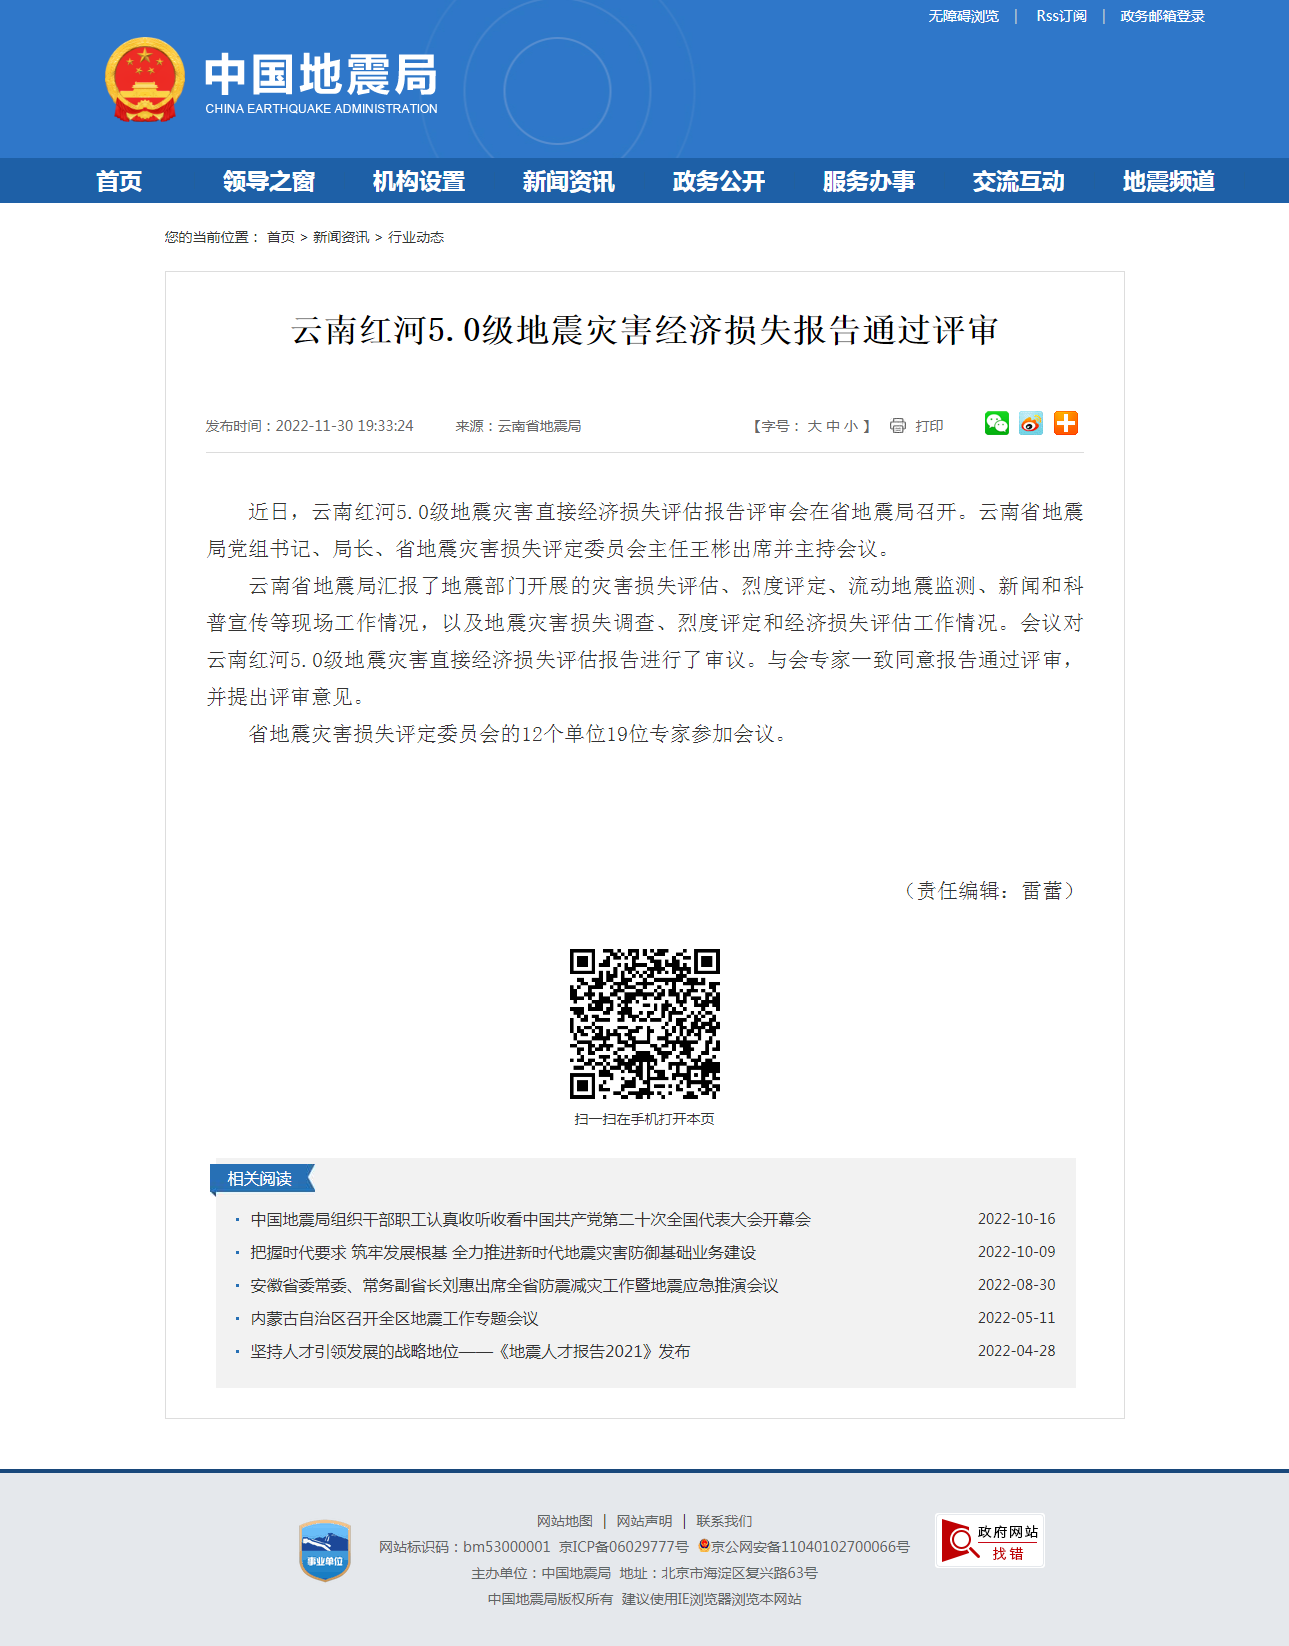 云南红河5.0级地震灾害经济损失报告通过评审.png